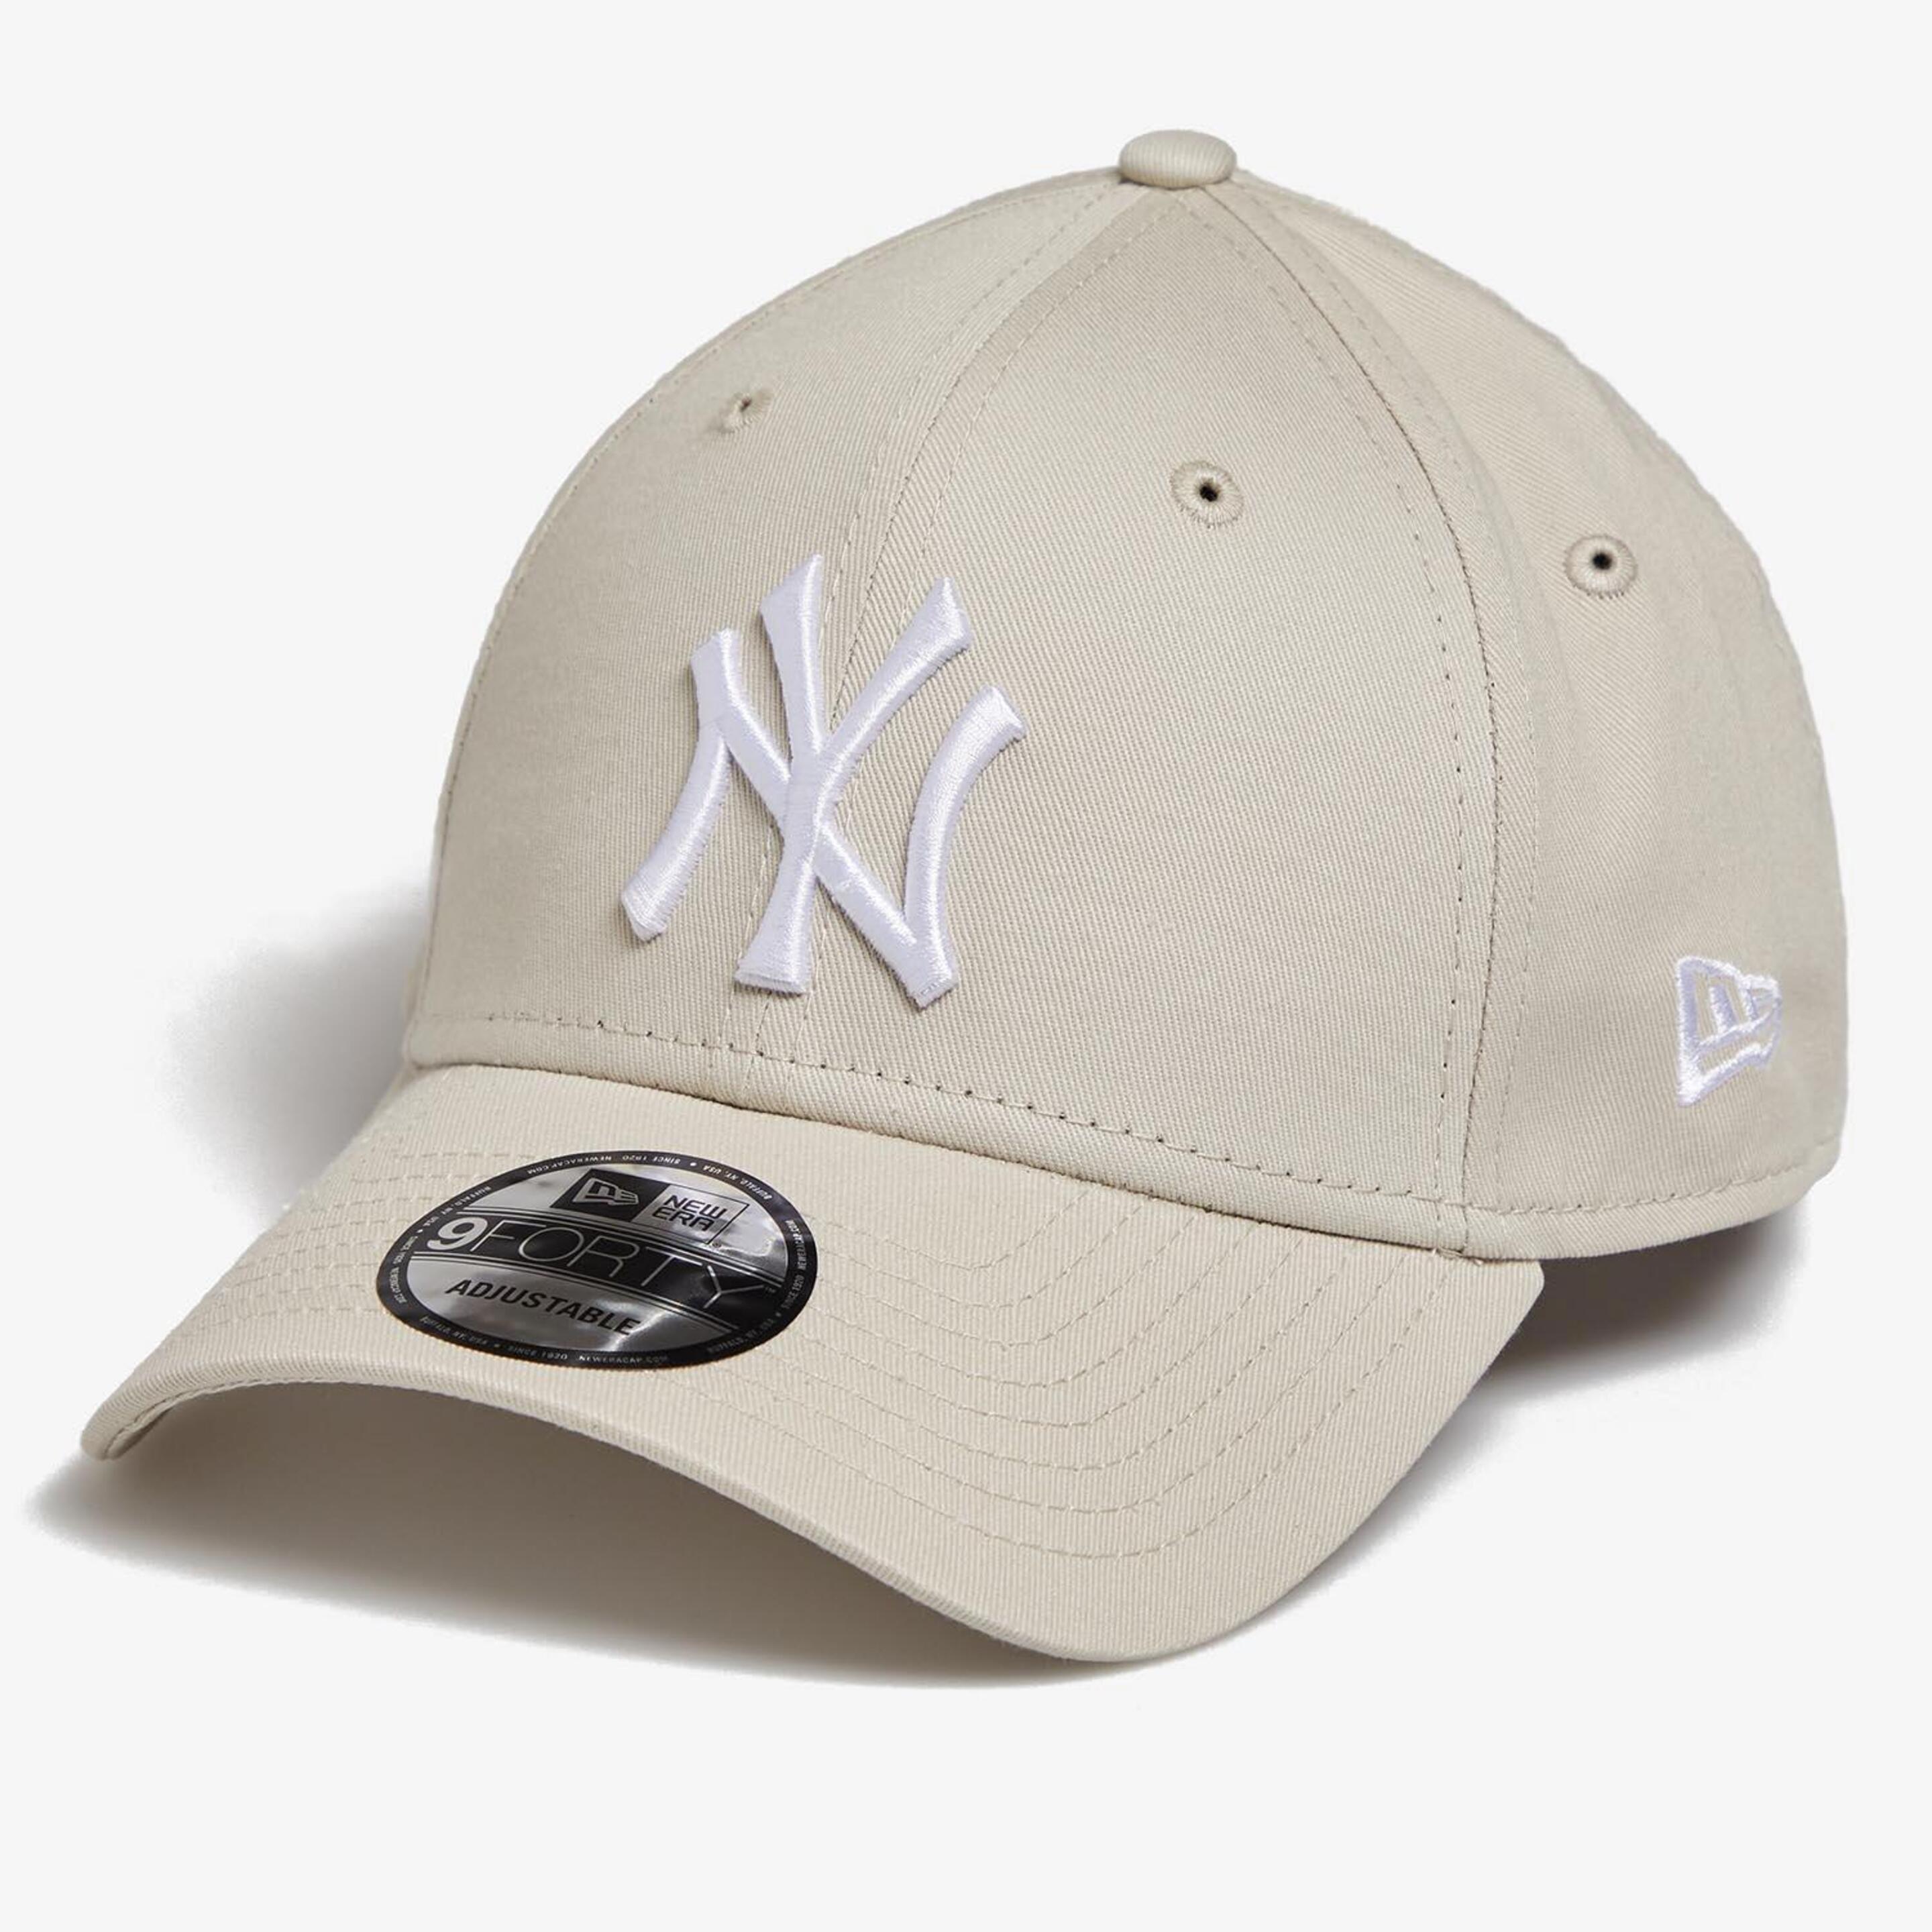 New Era Ny Yankees - marron - Boné